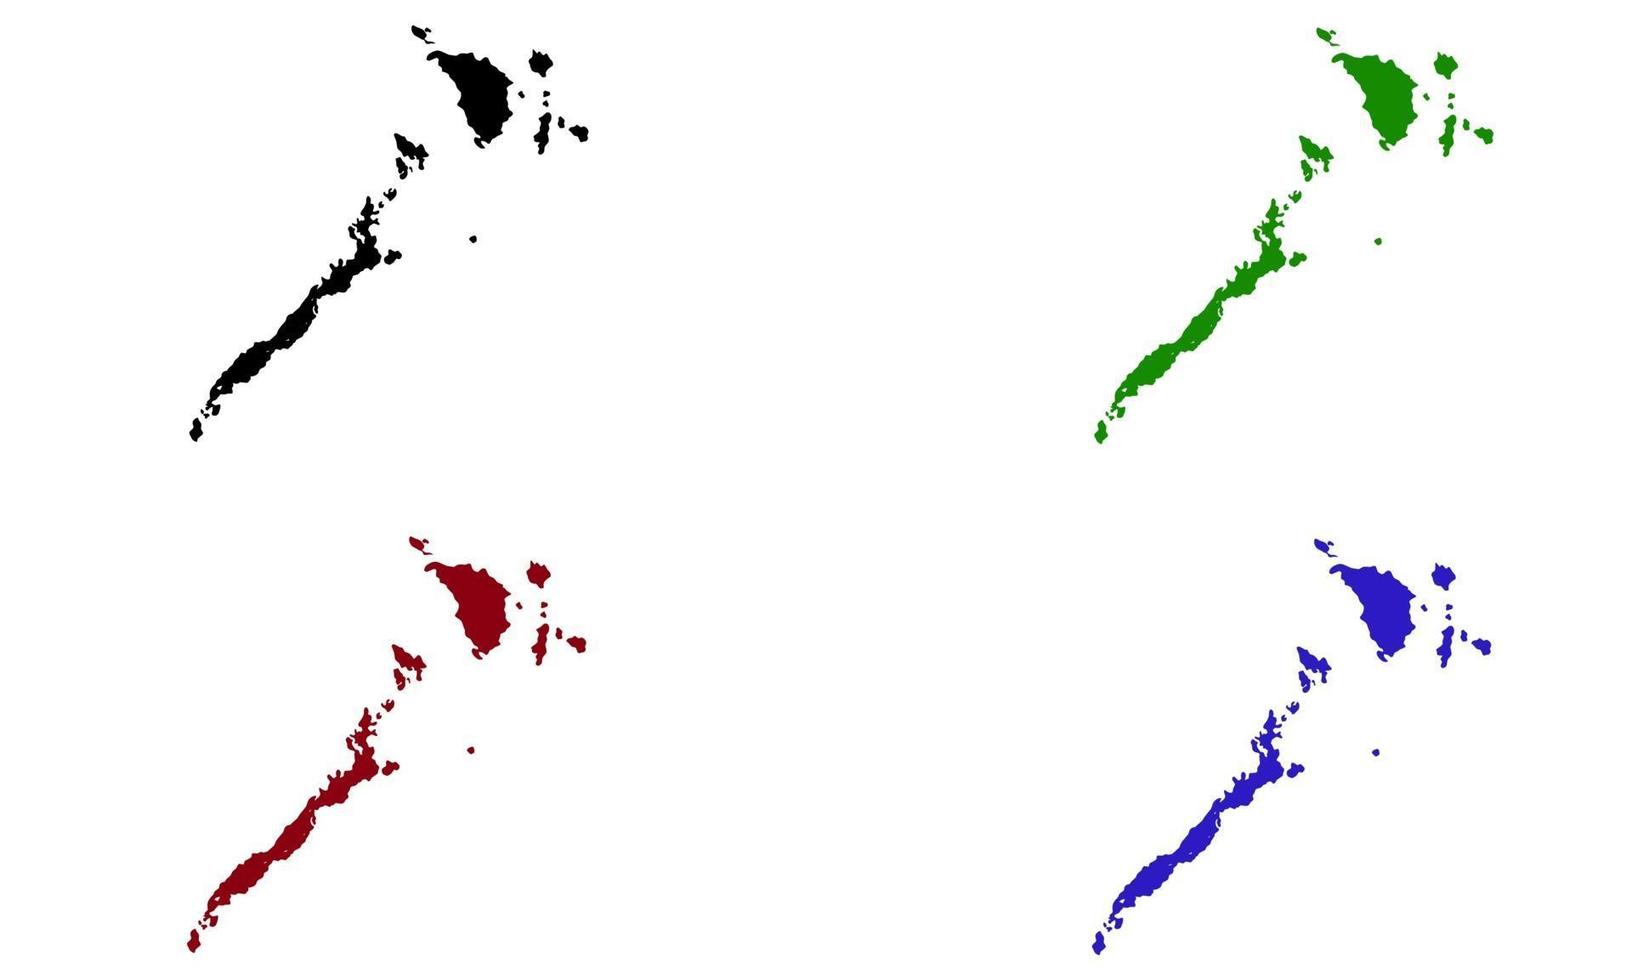 mappa silhouette della regione mimaro nelle filippine vettore